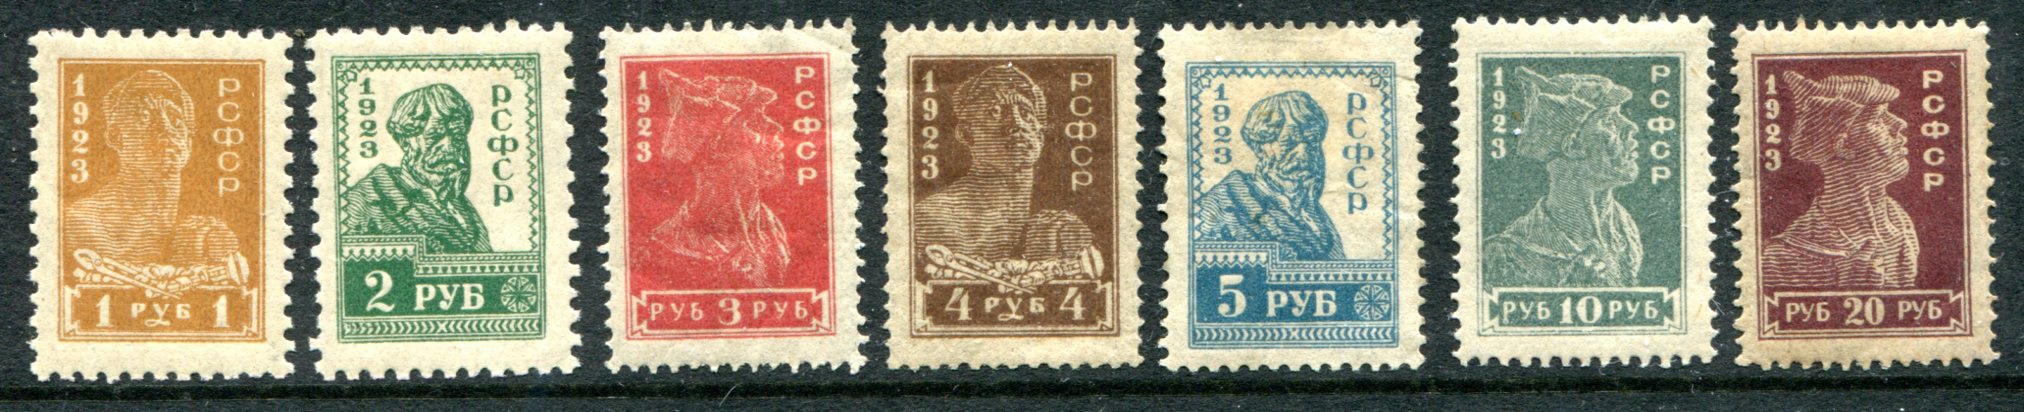 Почтовые марки стандартного выпуска «Золотой стандарт»